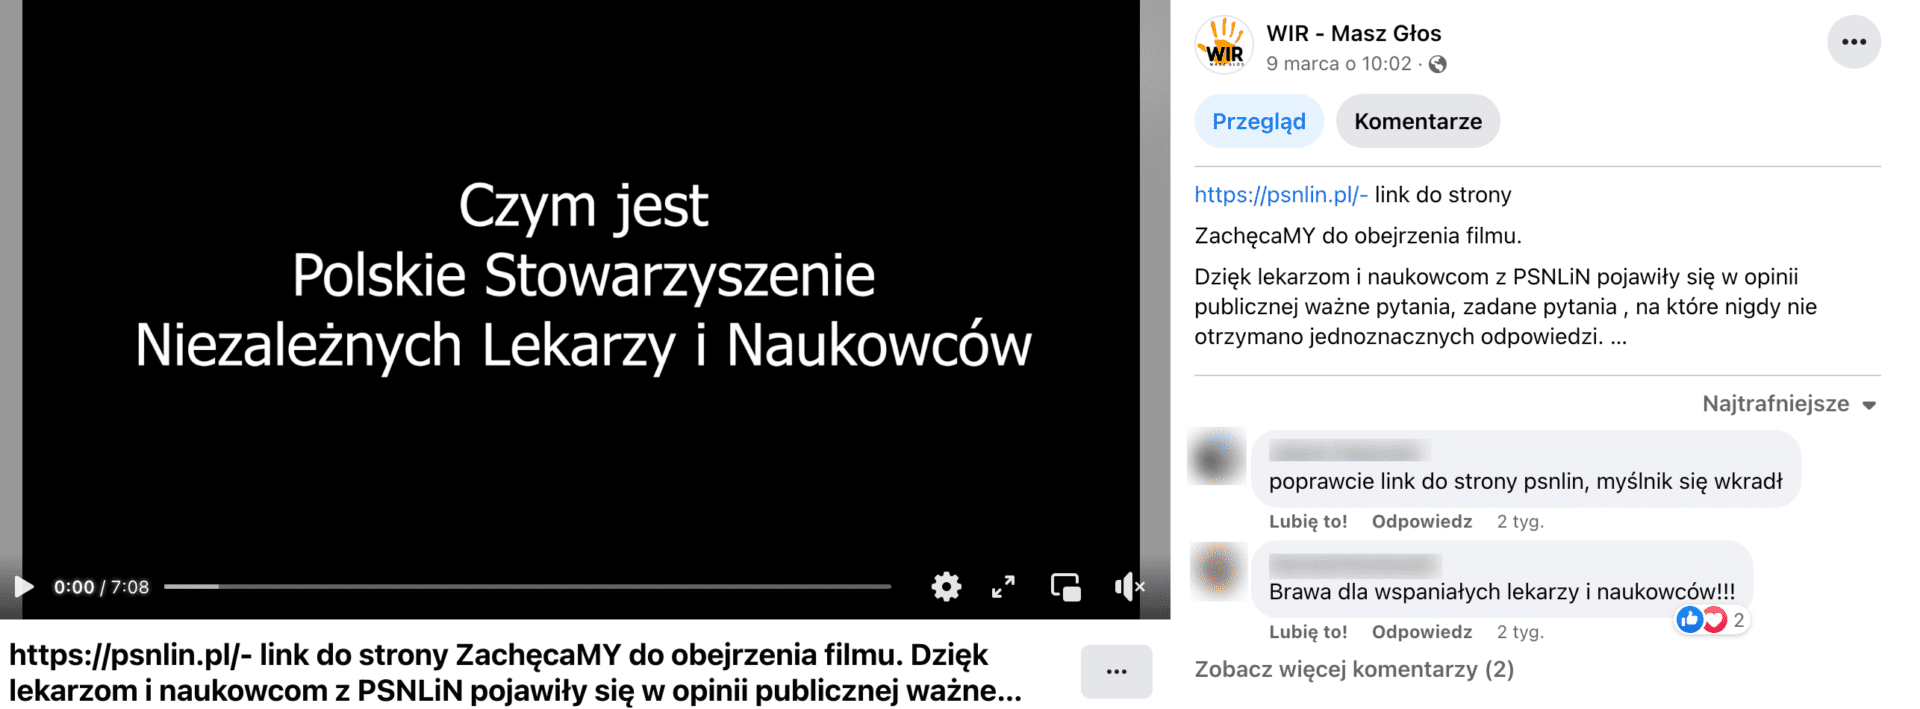 Zrzut ekranu posta o treści „ZachęcaMY do obejrzenia filmu. Dzięki lekarzom i naukowcom z PSNLiN pojawiły się w opinii publicznej ważne pytania, zadane pytania, na które nigdy nie otrzymano jednoznacznych odpowiedzi …” z dołączonym filmem zatytułowanym „Czym jest Polskie Stowarzyszenie Niezależnych Lekarzy i Naukowców”.